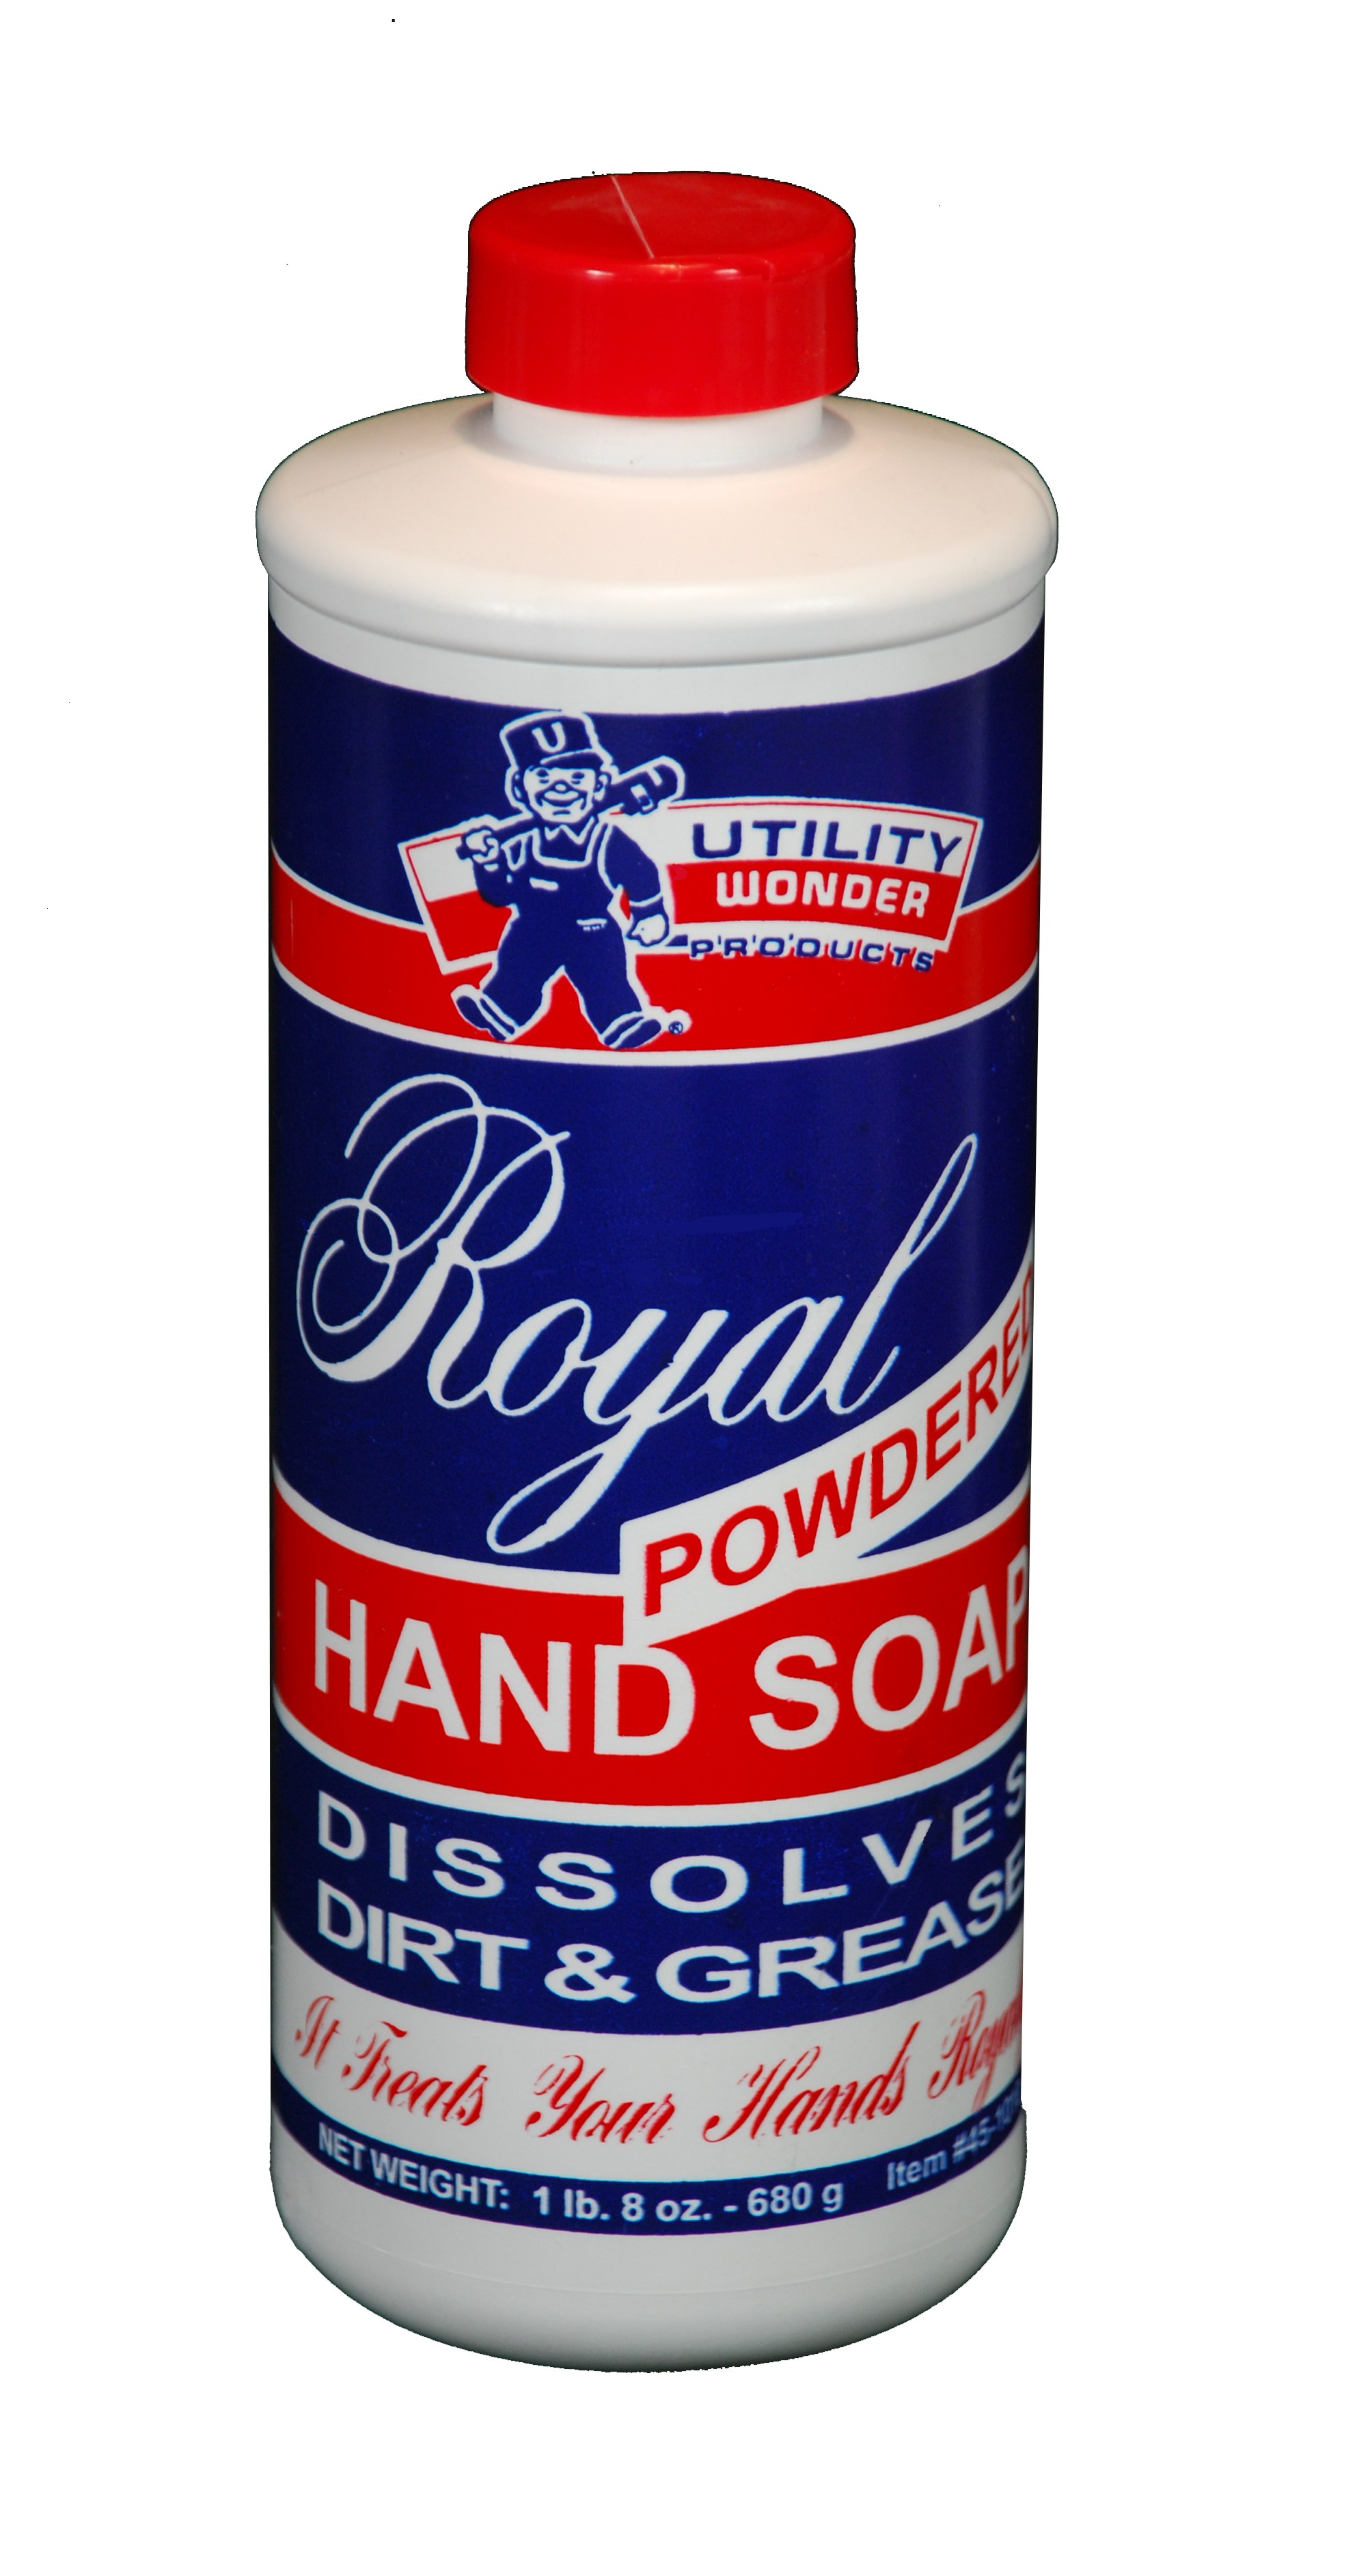 ROYAL POWDERED HAND SOAP